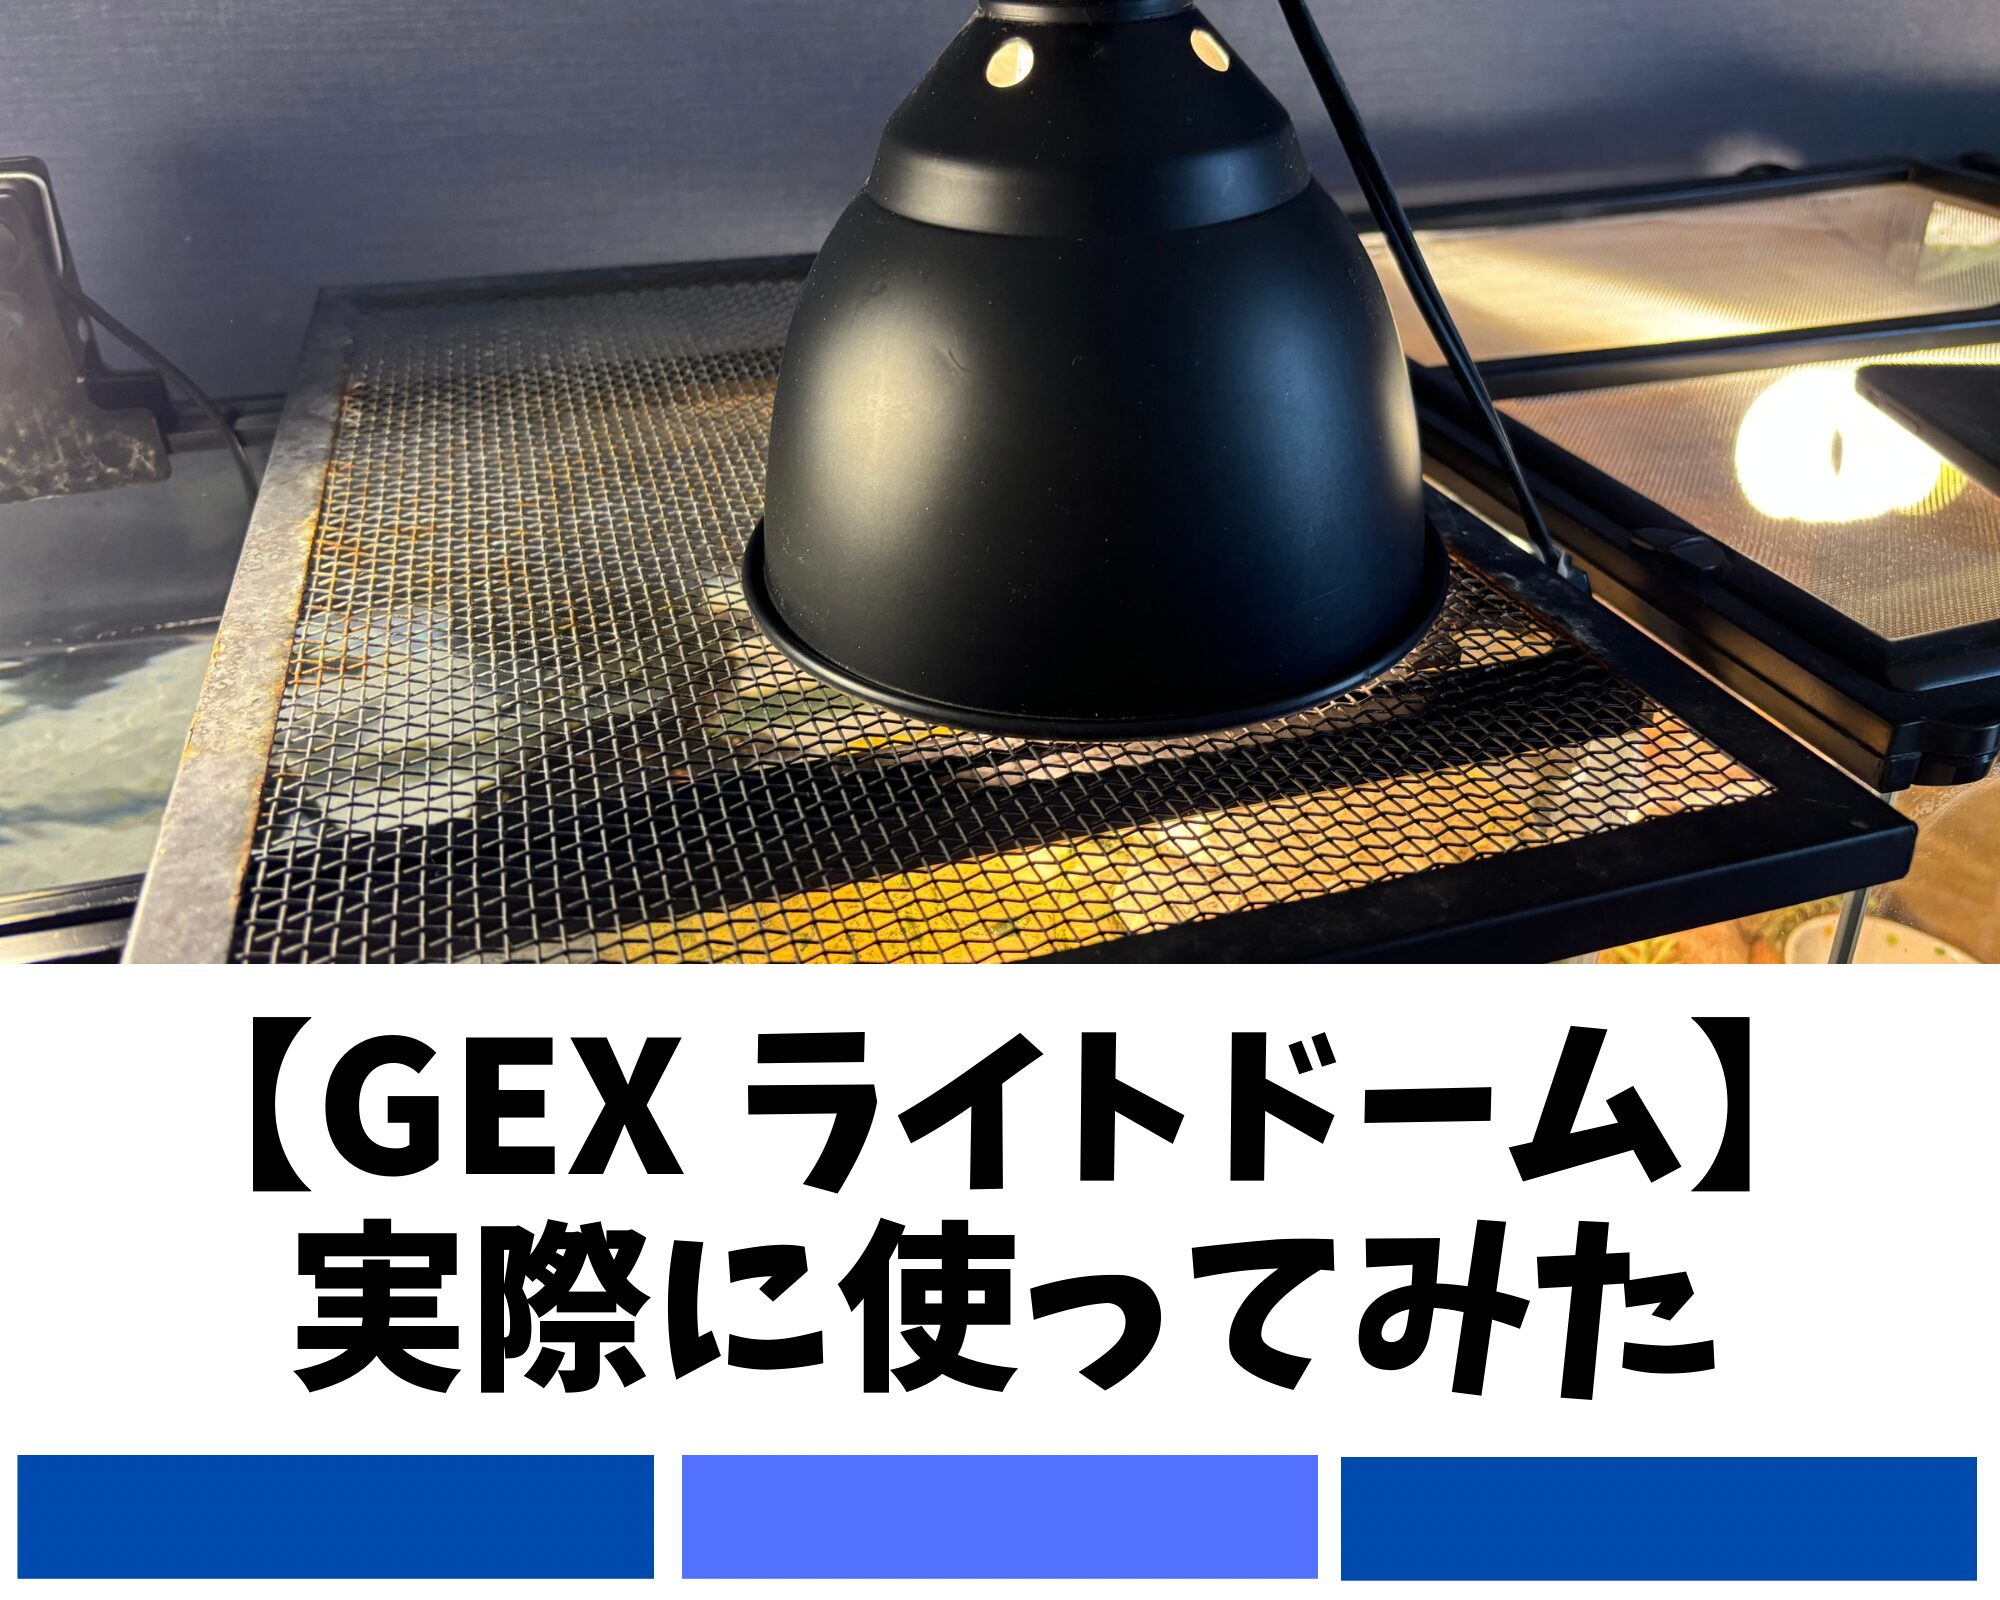 GEX ライトドームを実際に使ってみた感想